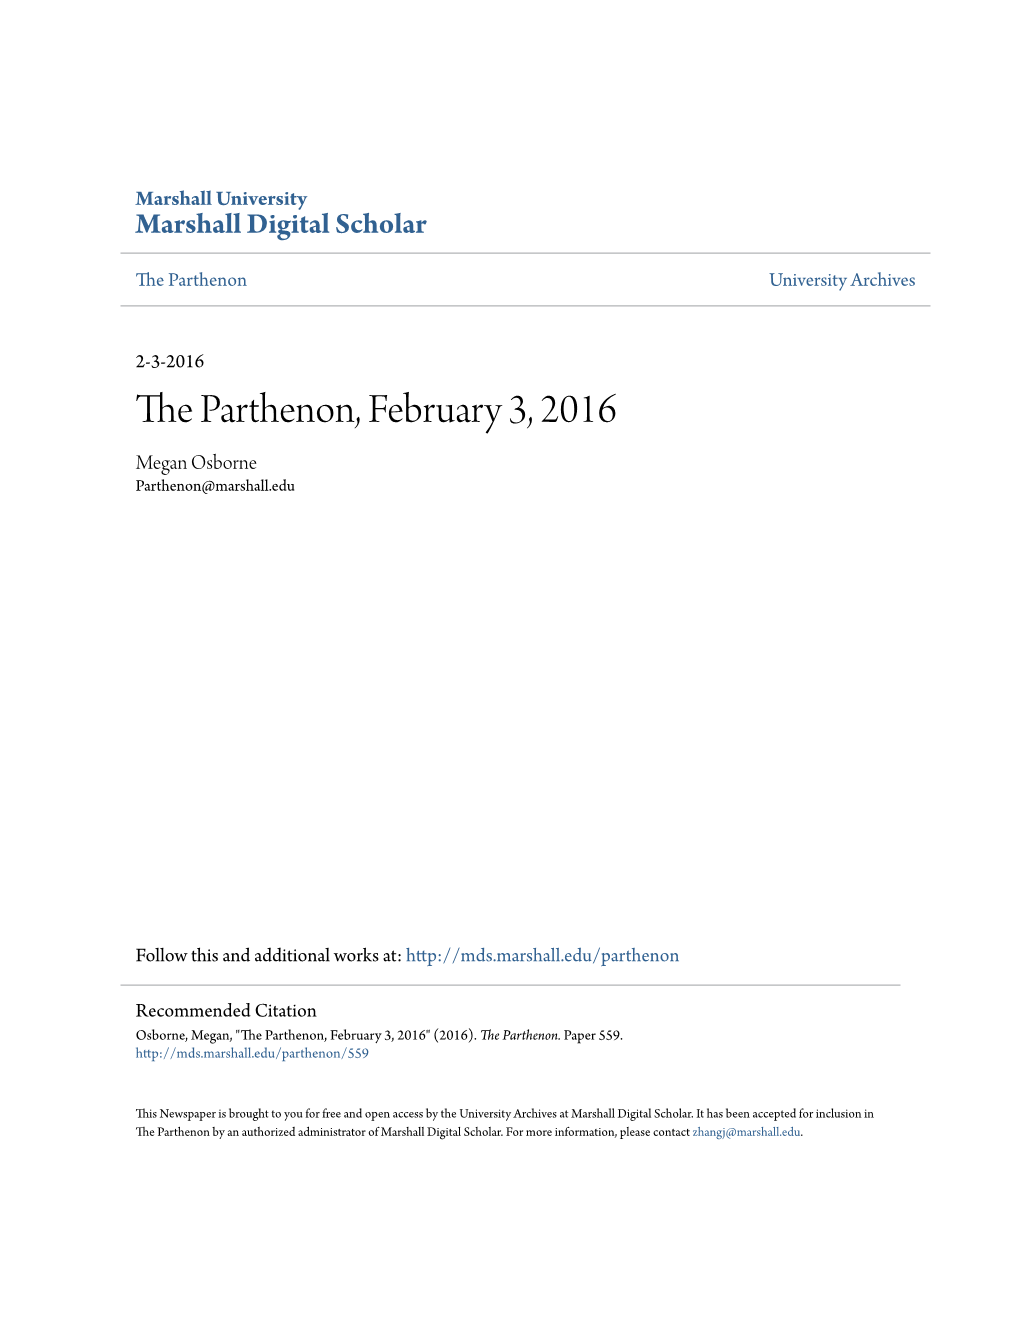 The Parthenon, February 3, 2016